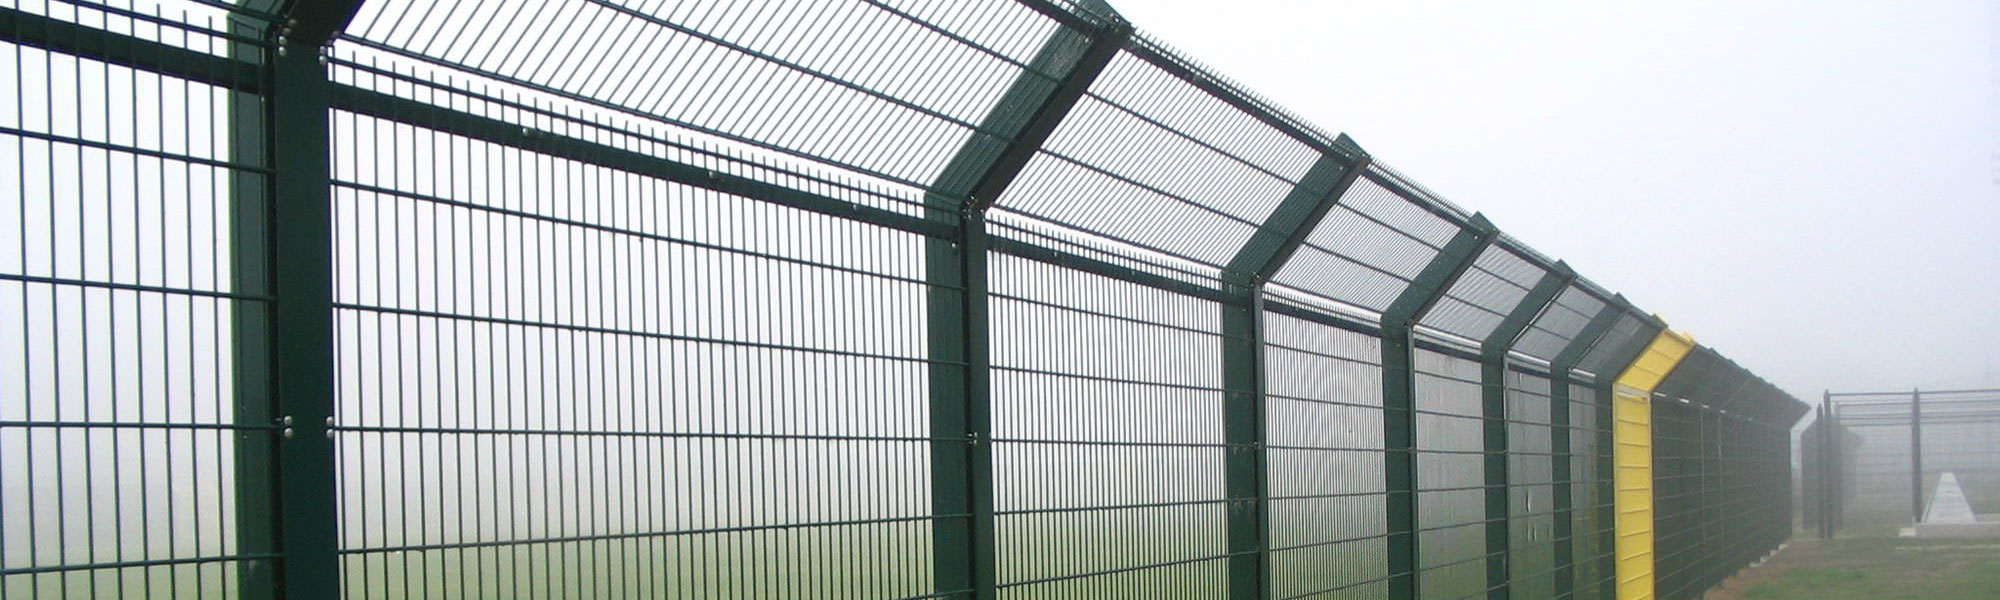 PVC Rail Fencing - Fenceit Ireland